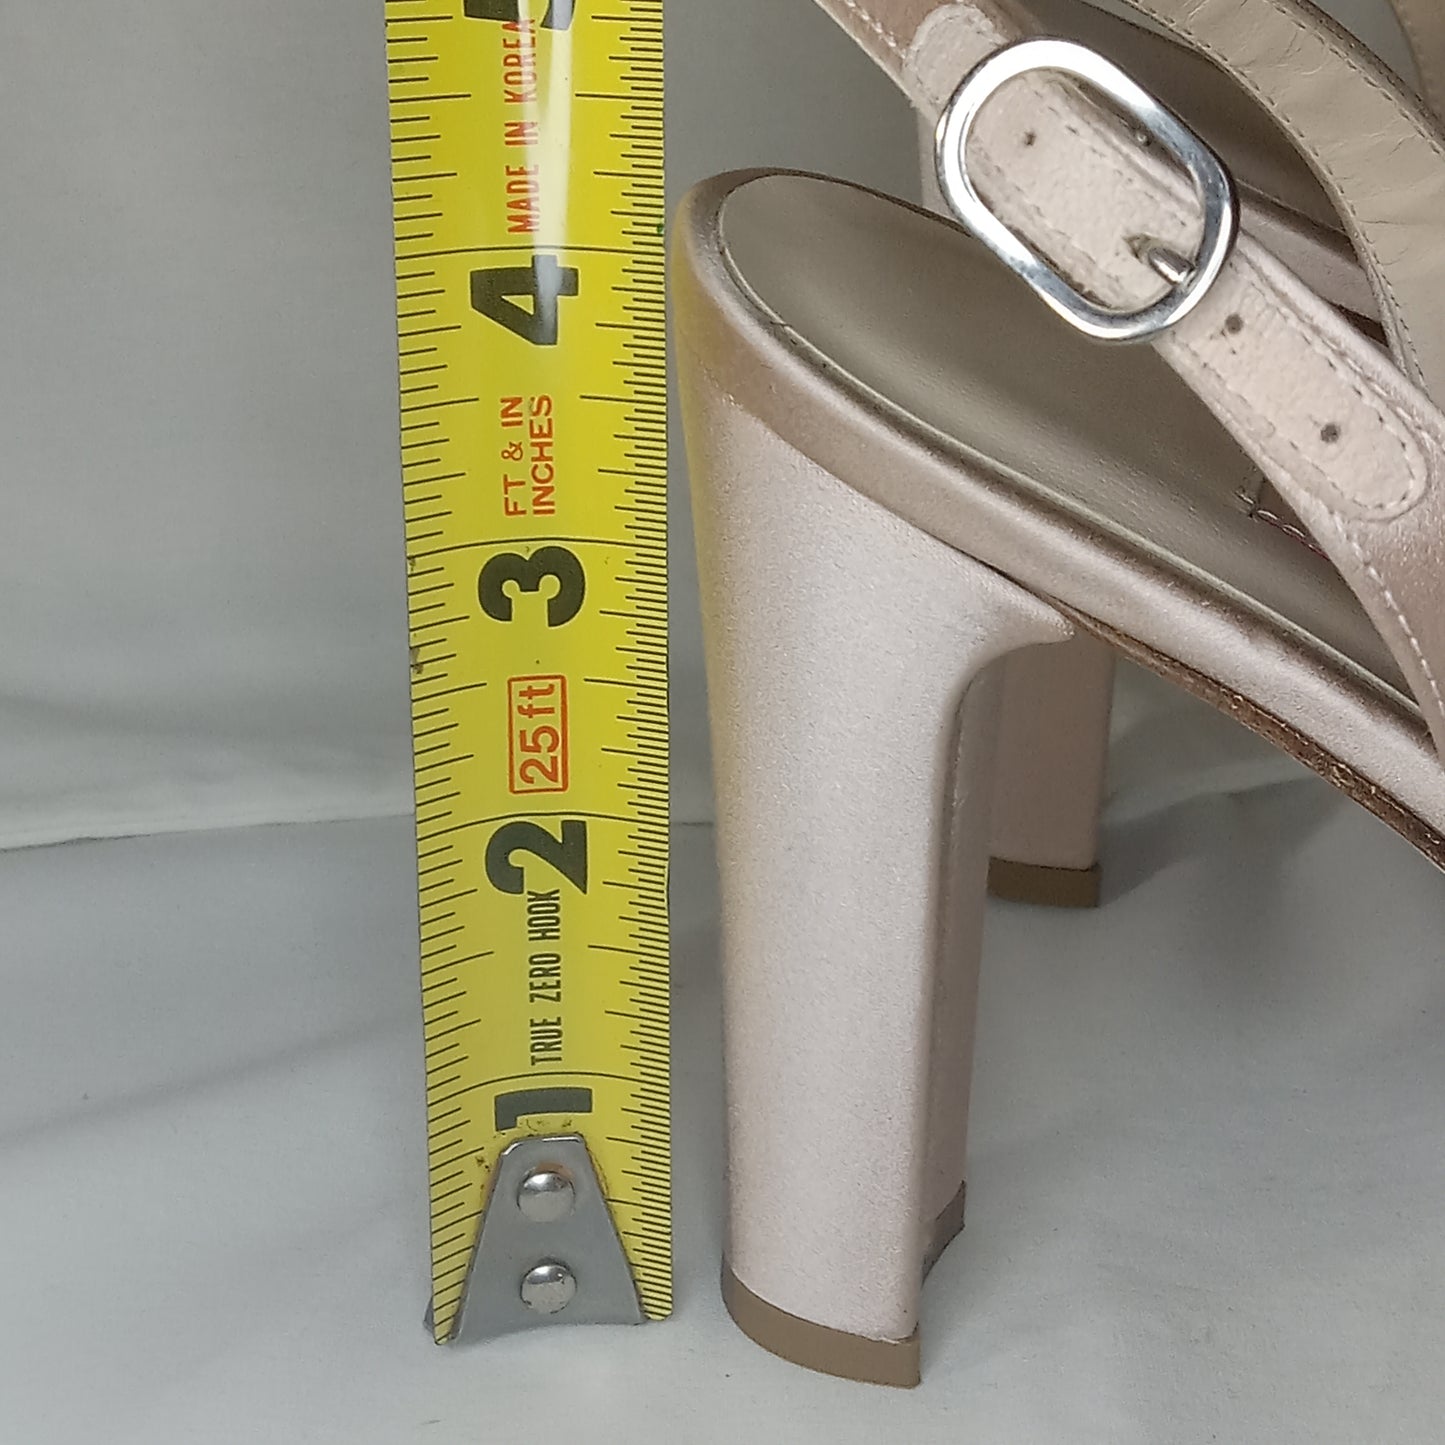 Ferracuti 4.25 inch satin wedding slingback pumps with buckle strap